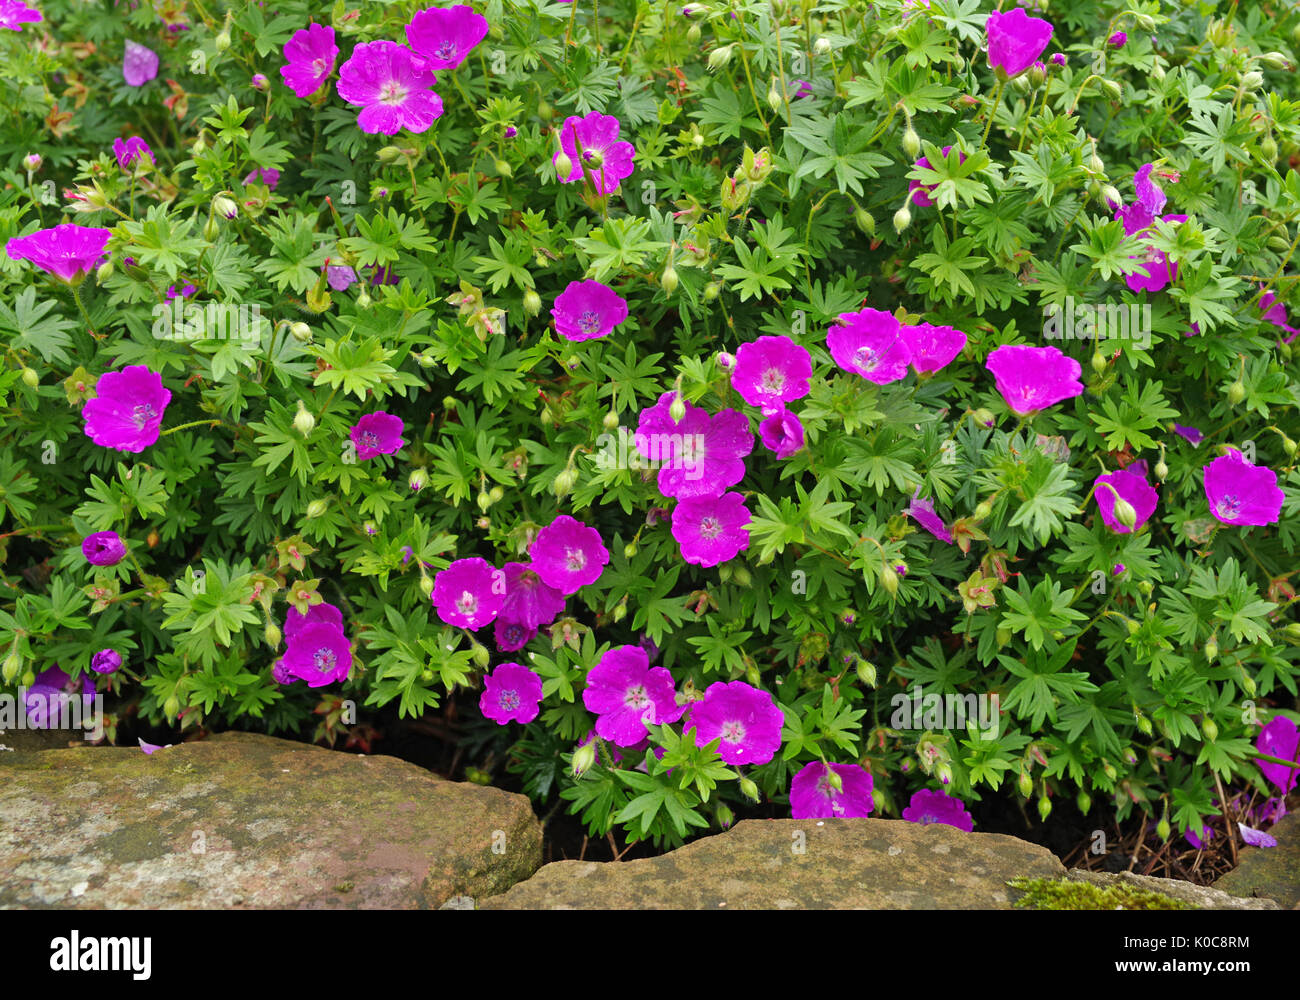 Profundo de flor pequeña rosa geranio planta perenne que crece en el jardín inglés junto a cantos de arenisca erosionados. Foto de stock